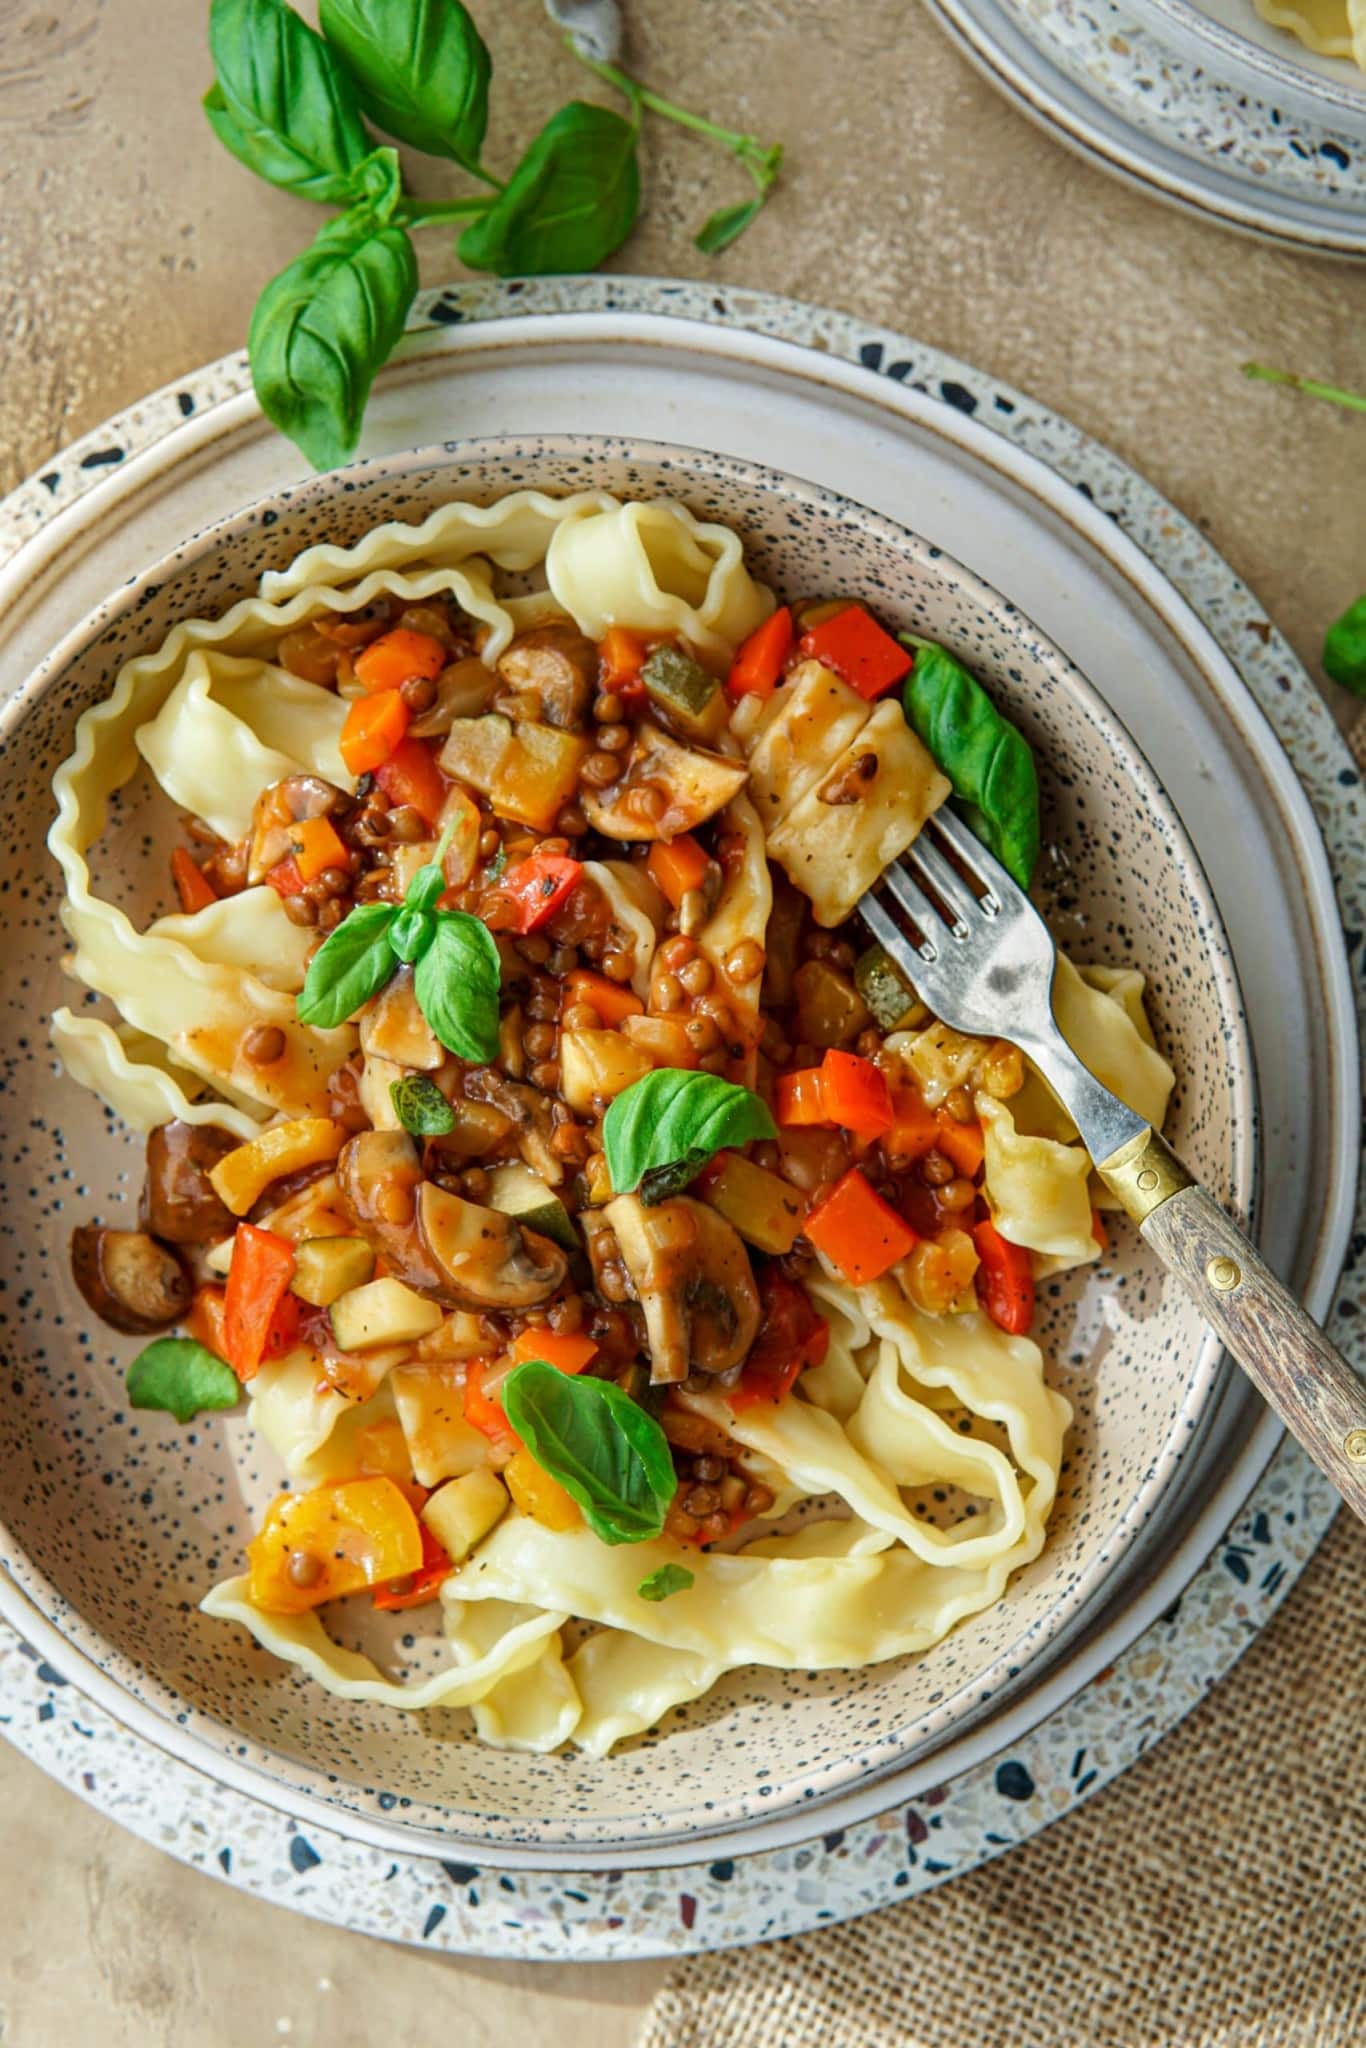 Recept voor vegan pasta met rode saus